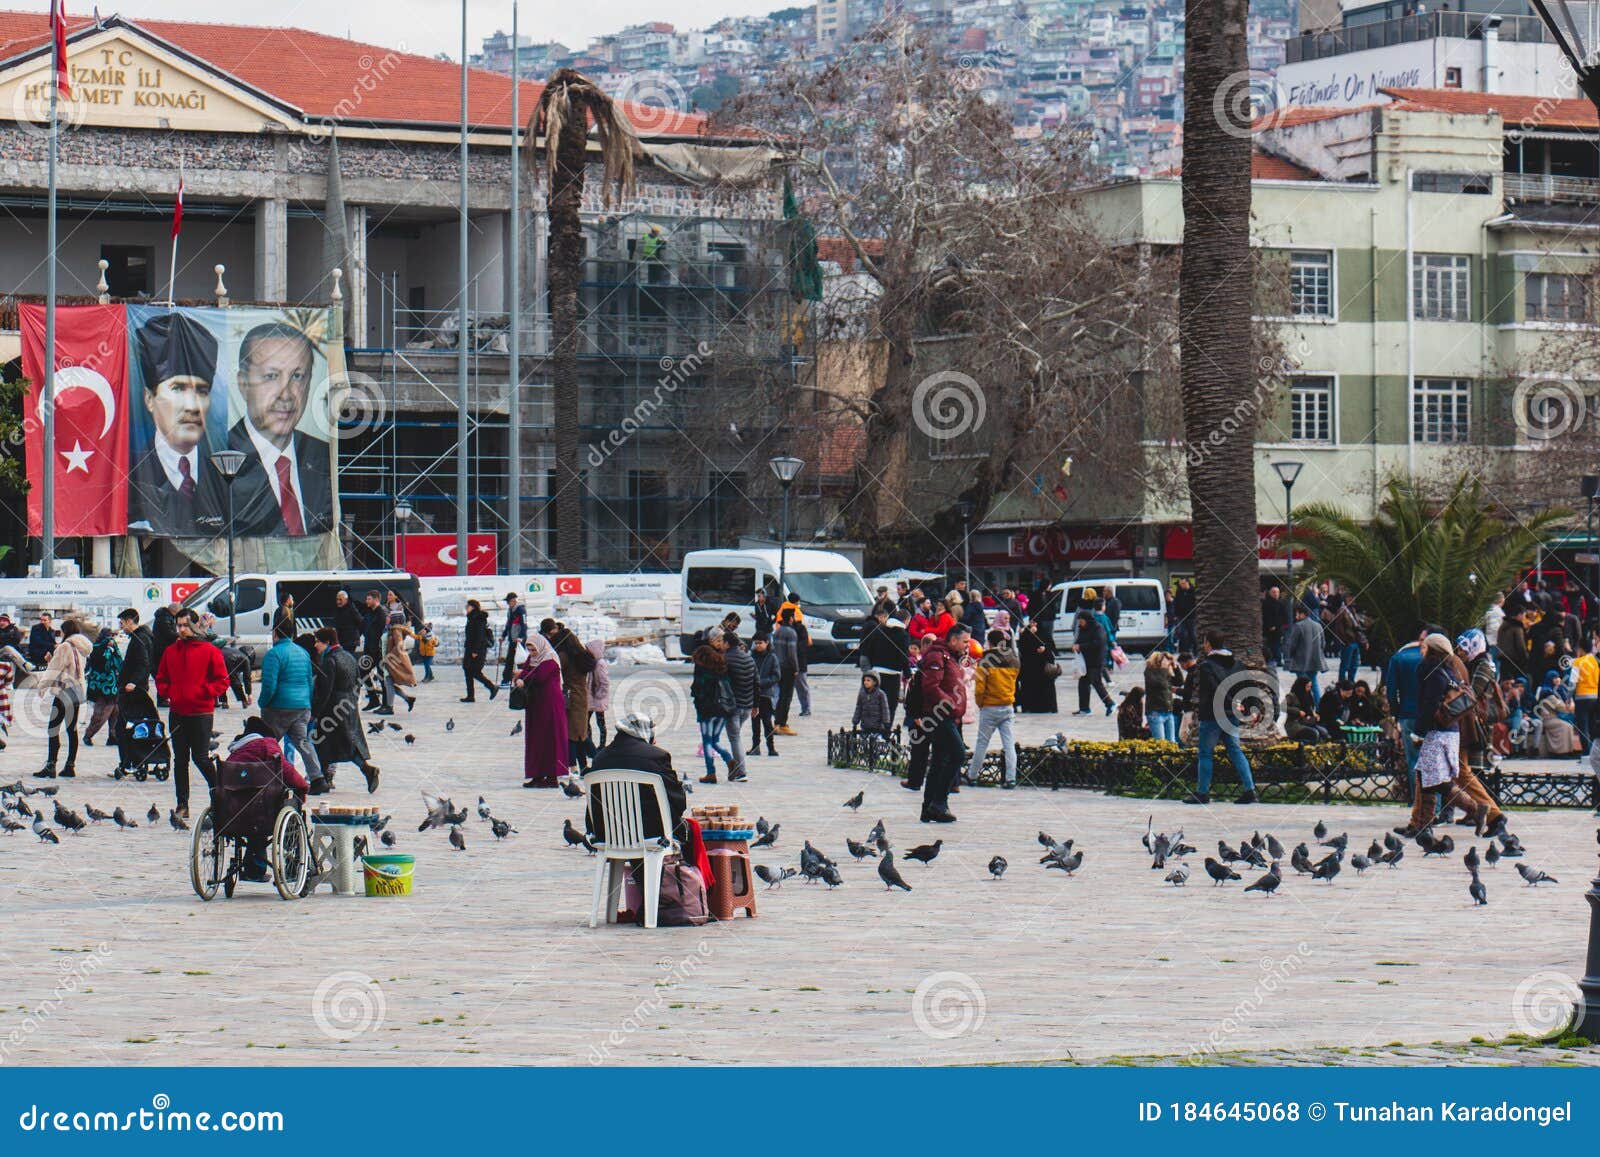 Street View In Foca Izmir Stock Photo - Download Image Now ...